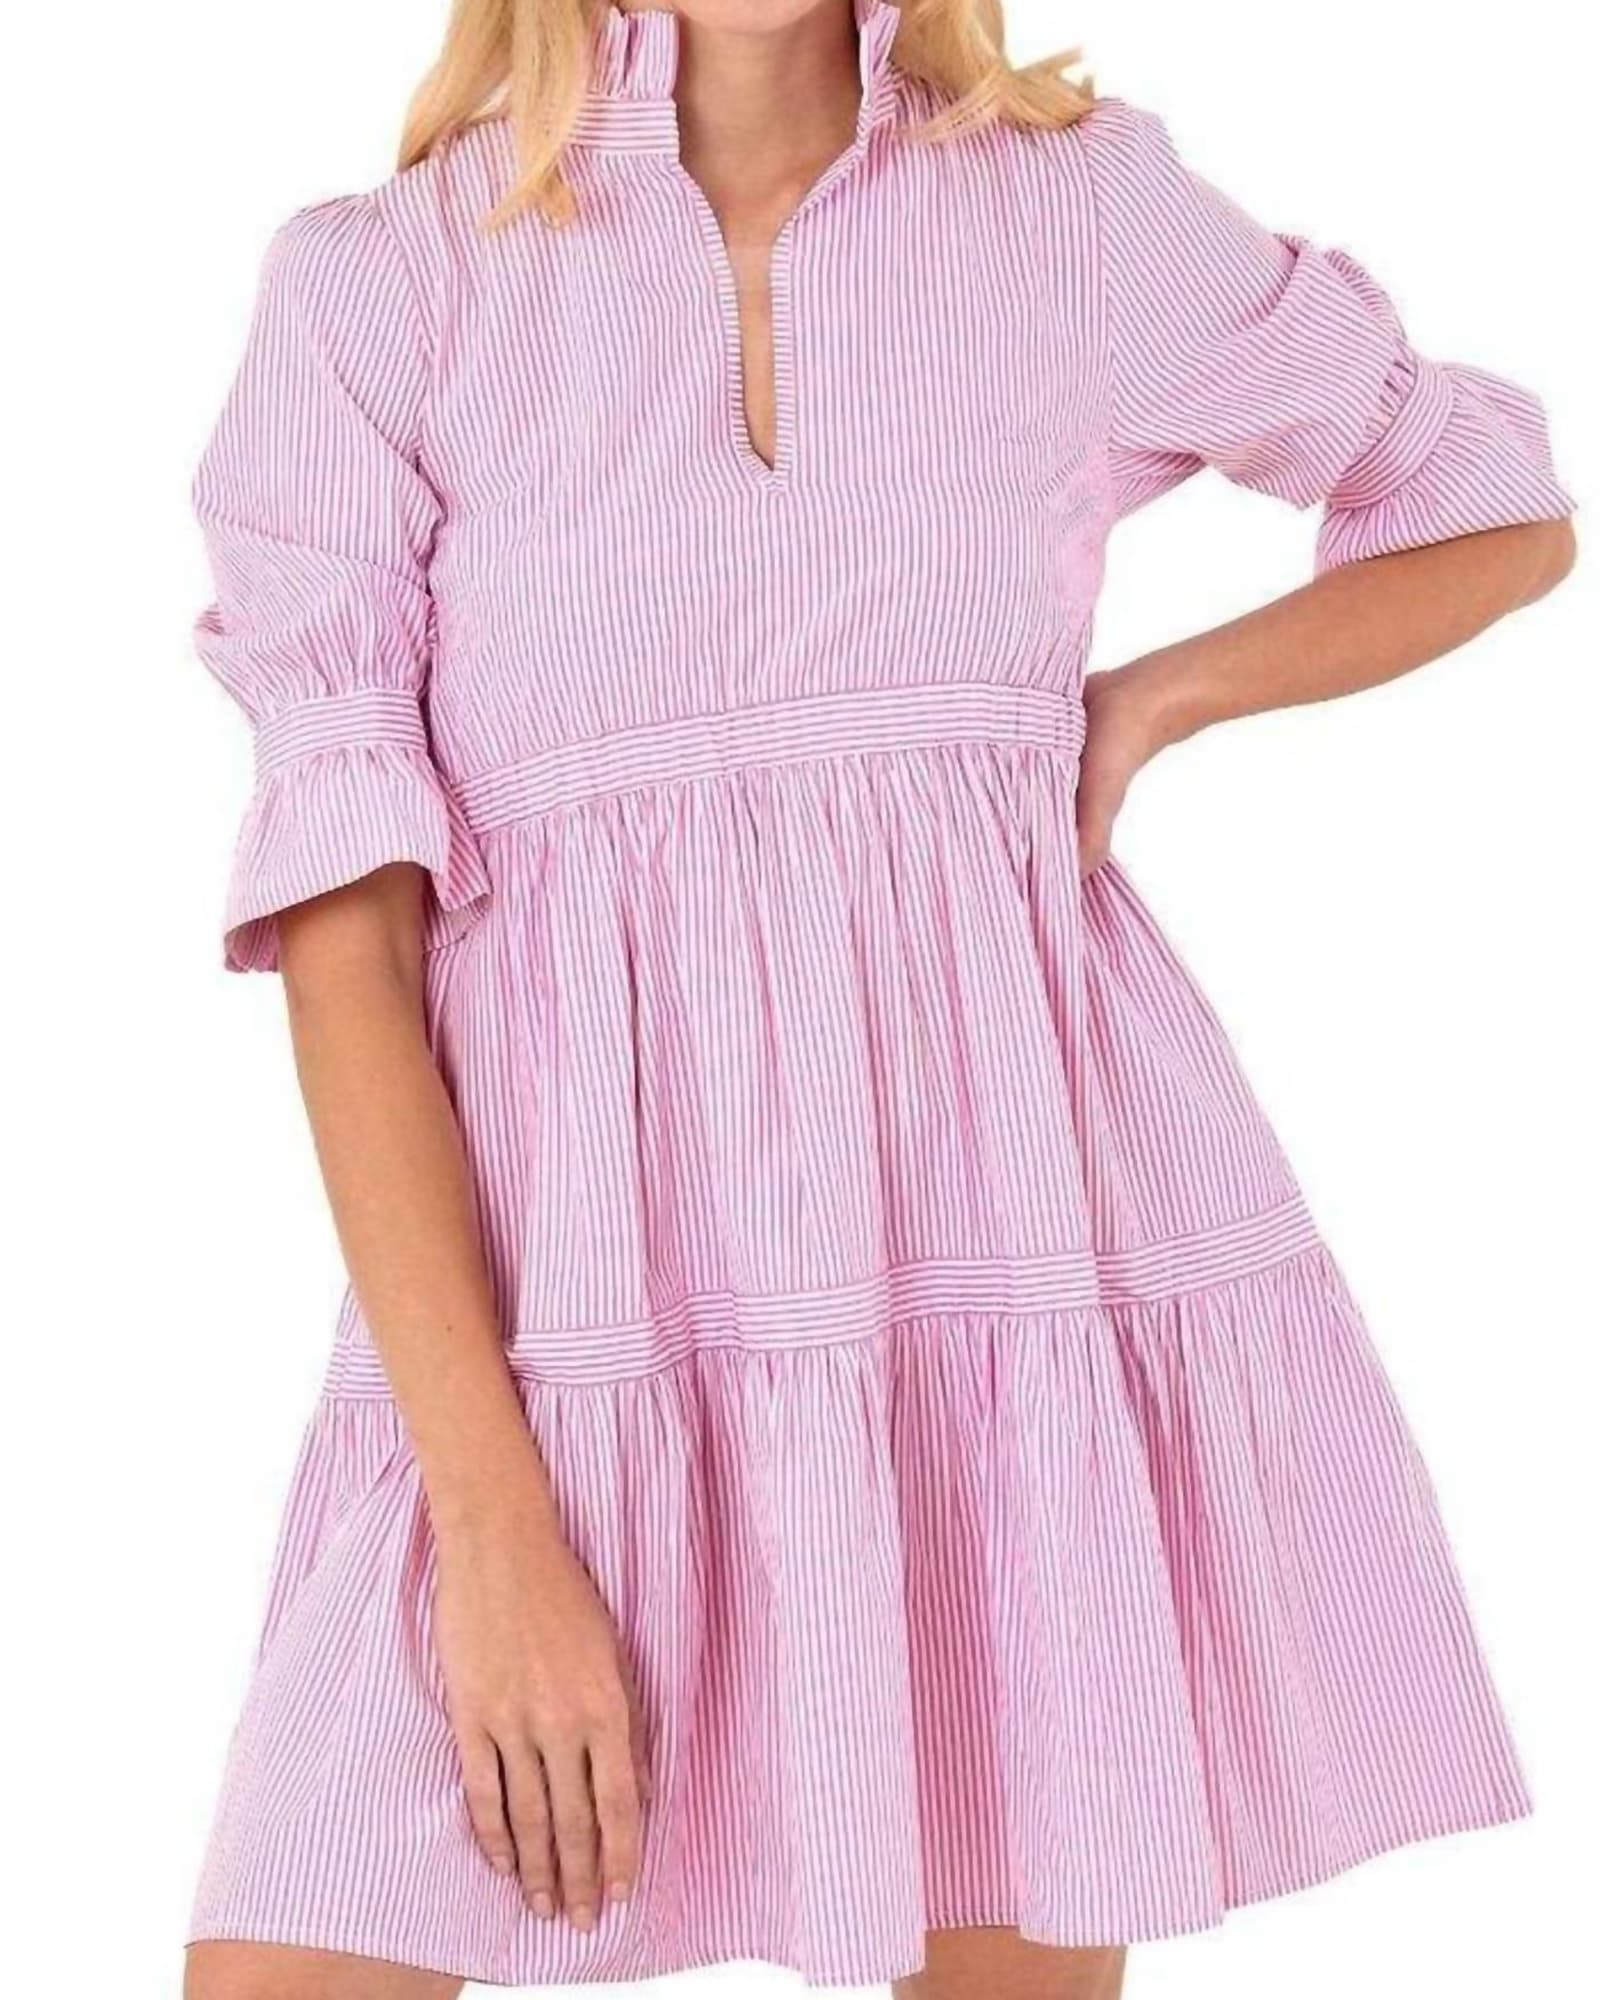 Teardrop Dress - Stripe Wash & Wear In Pink | Pink